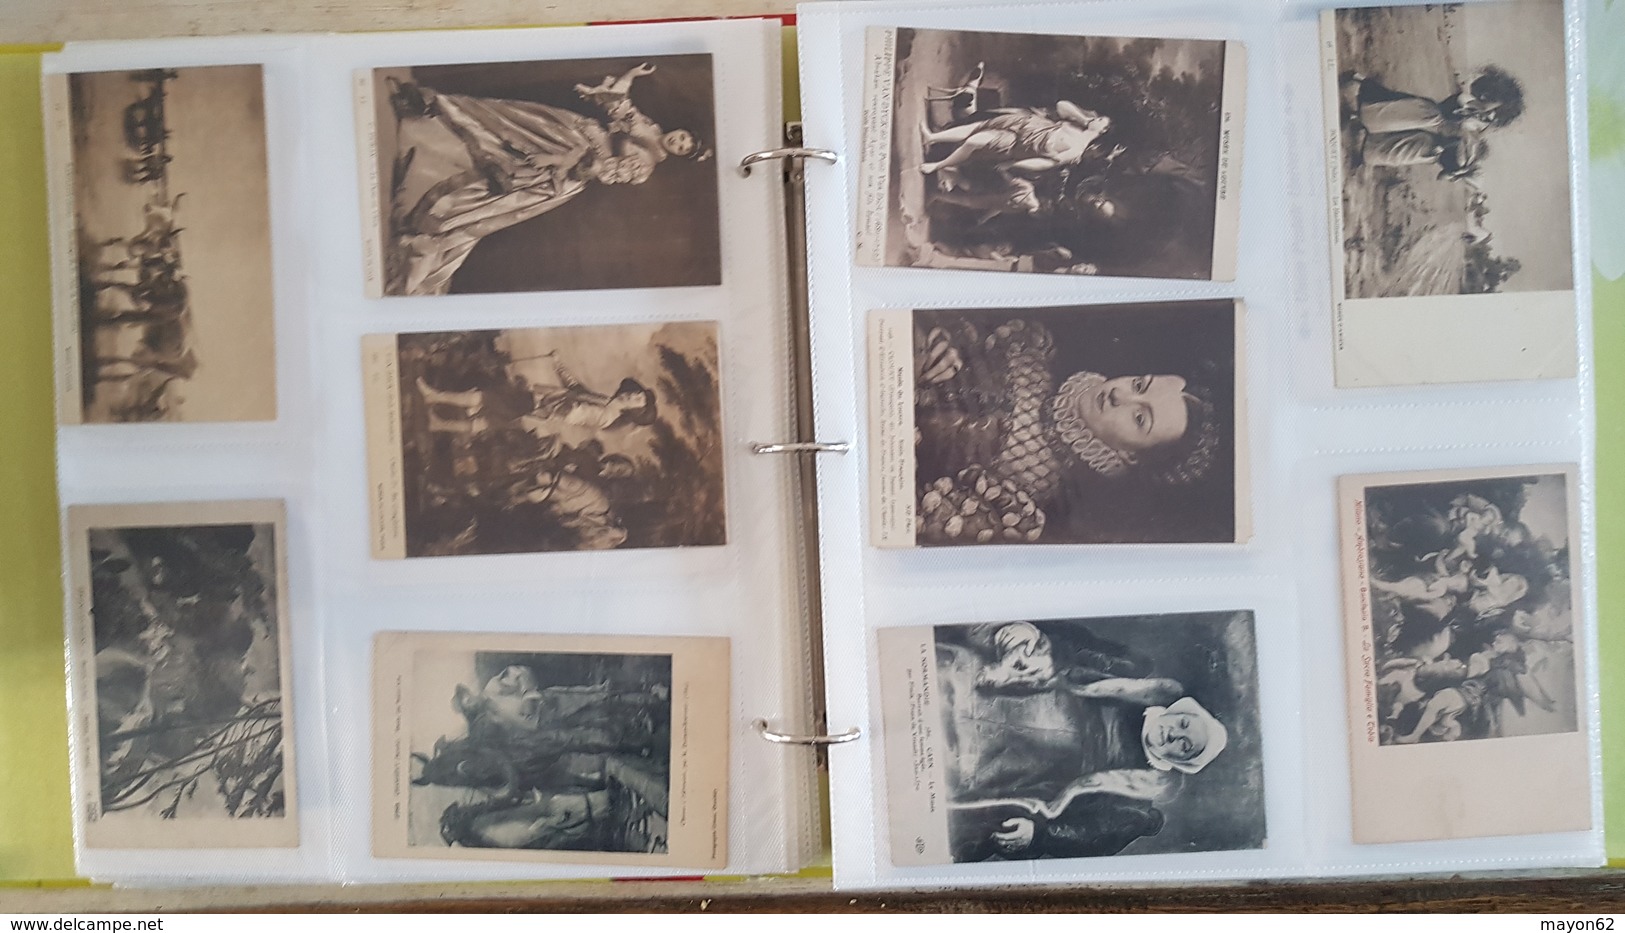 Lot + 600 CPA - cartes postales anciennes - Femmes portraits enfants Art tableau nu publicités timbres - voir scans